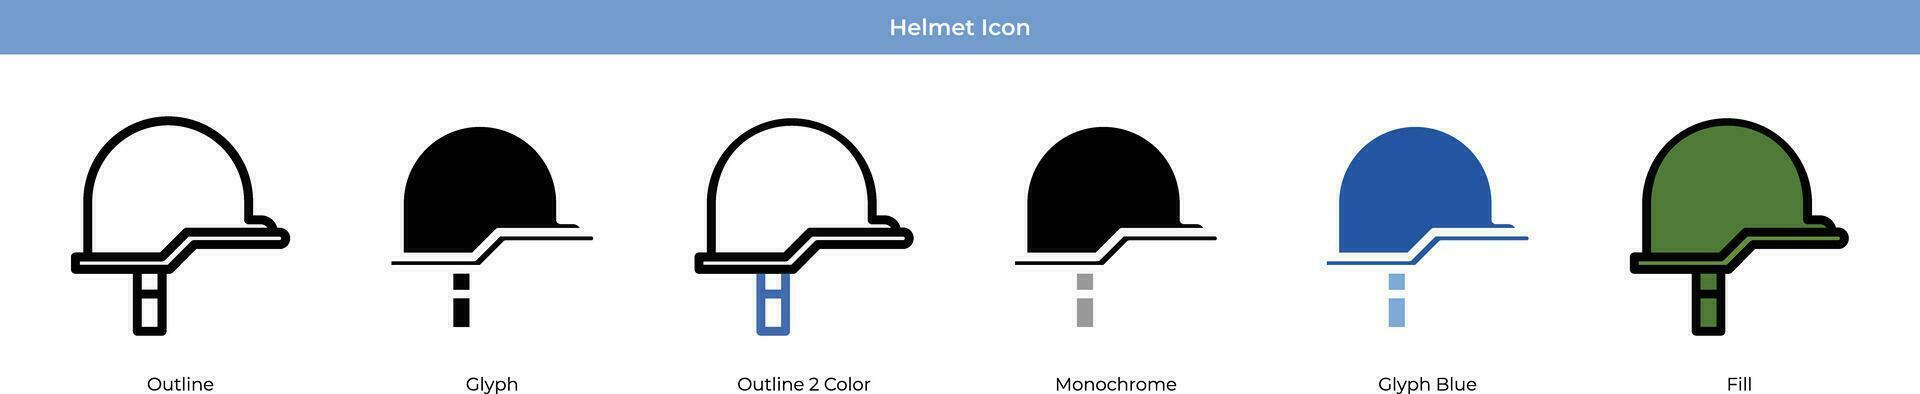 Helmet Icon Set Vector